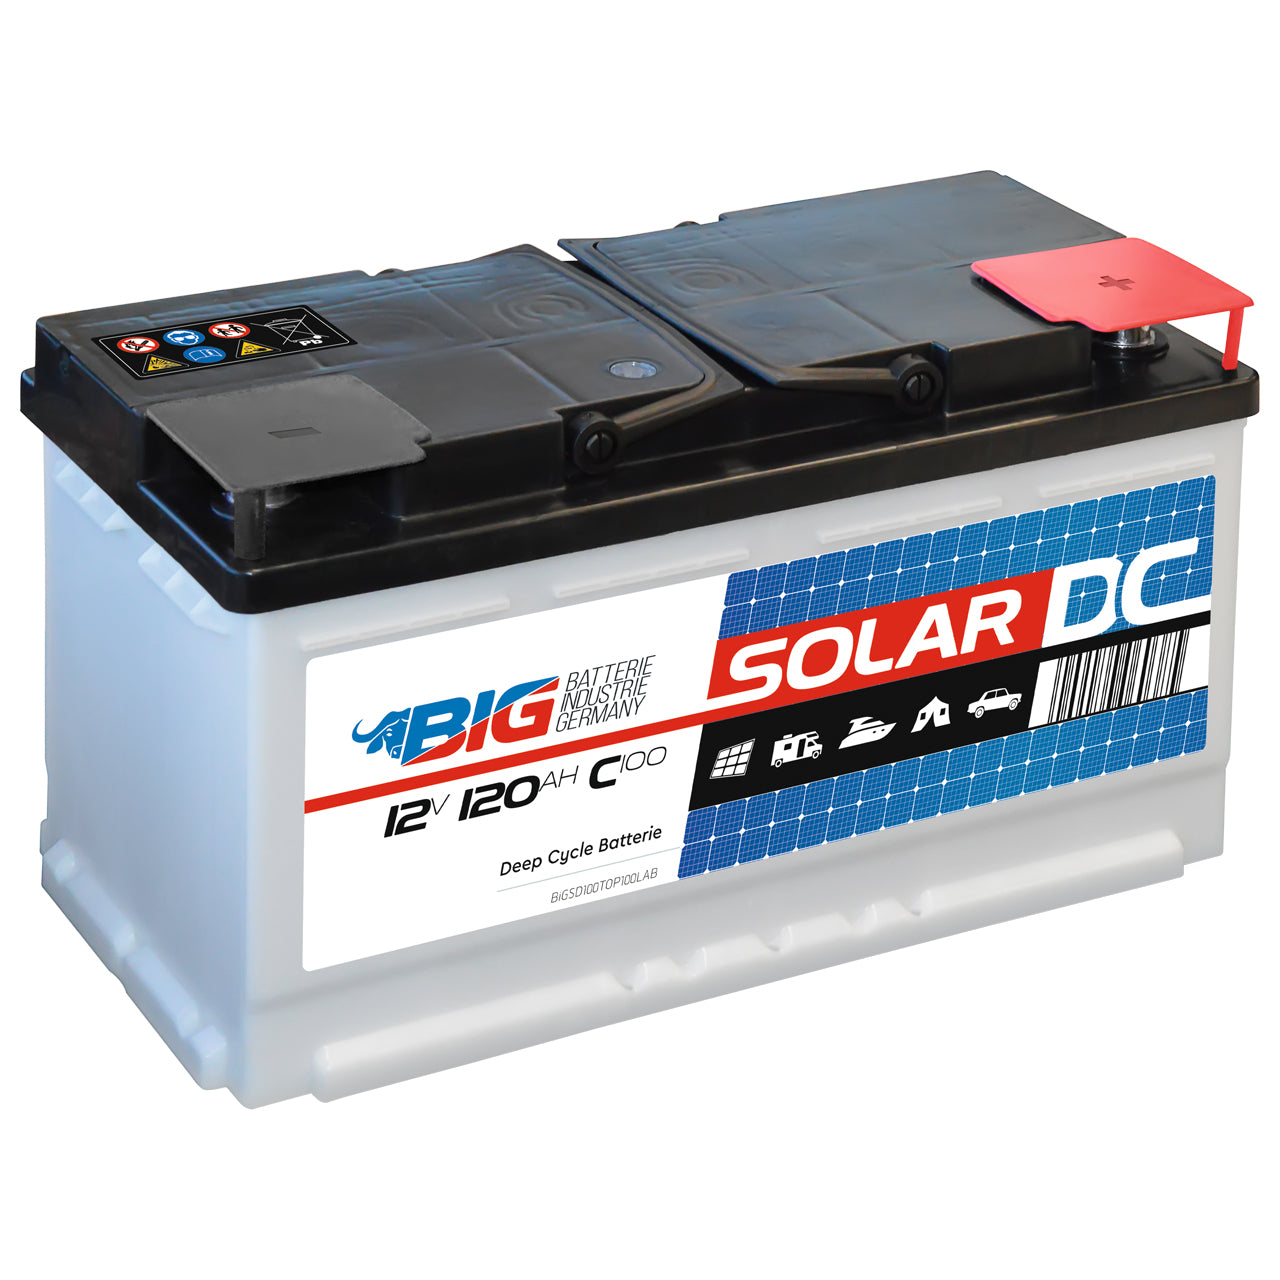 SIGA Solarbatterie 120Ah 12V, 184,01 €